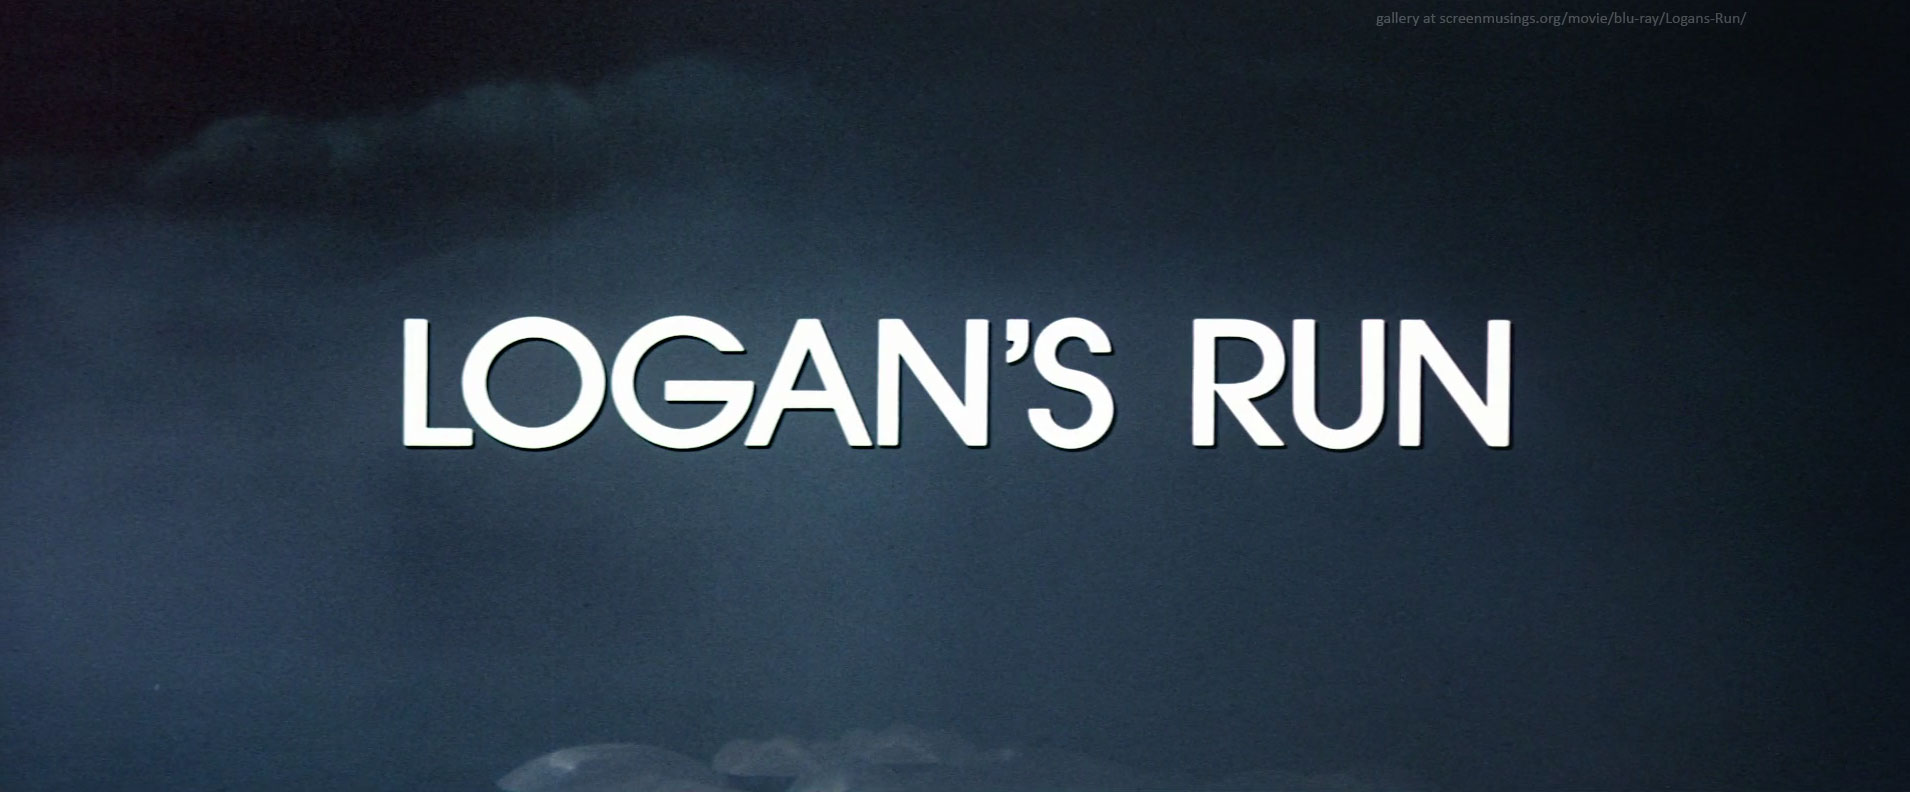 opening title in Logan's Run